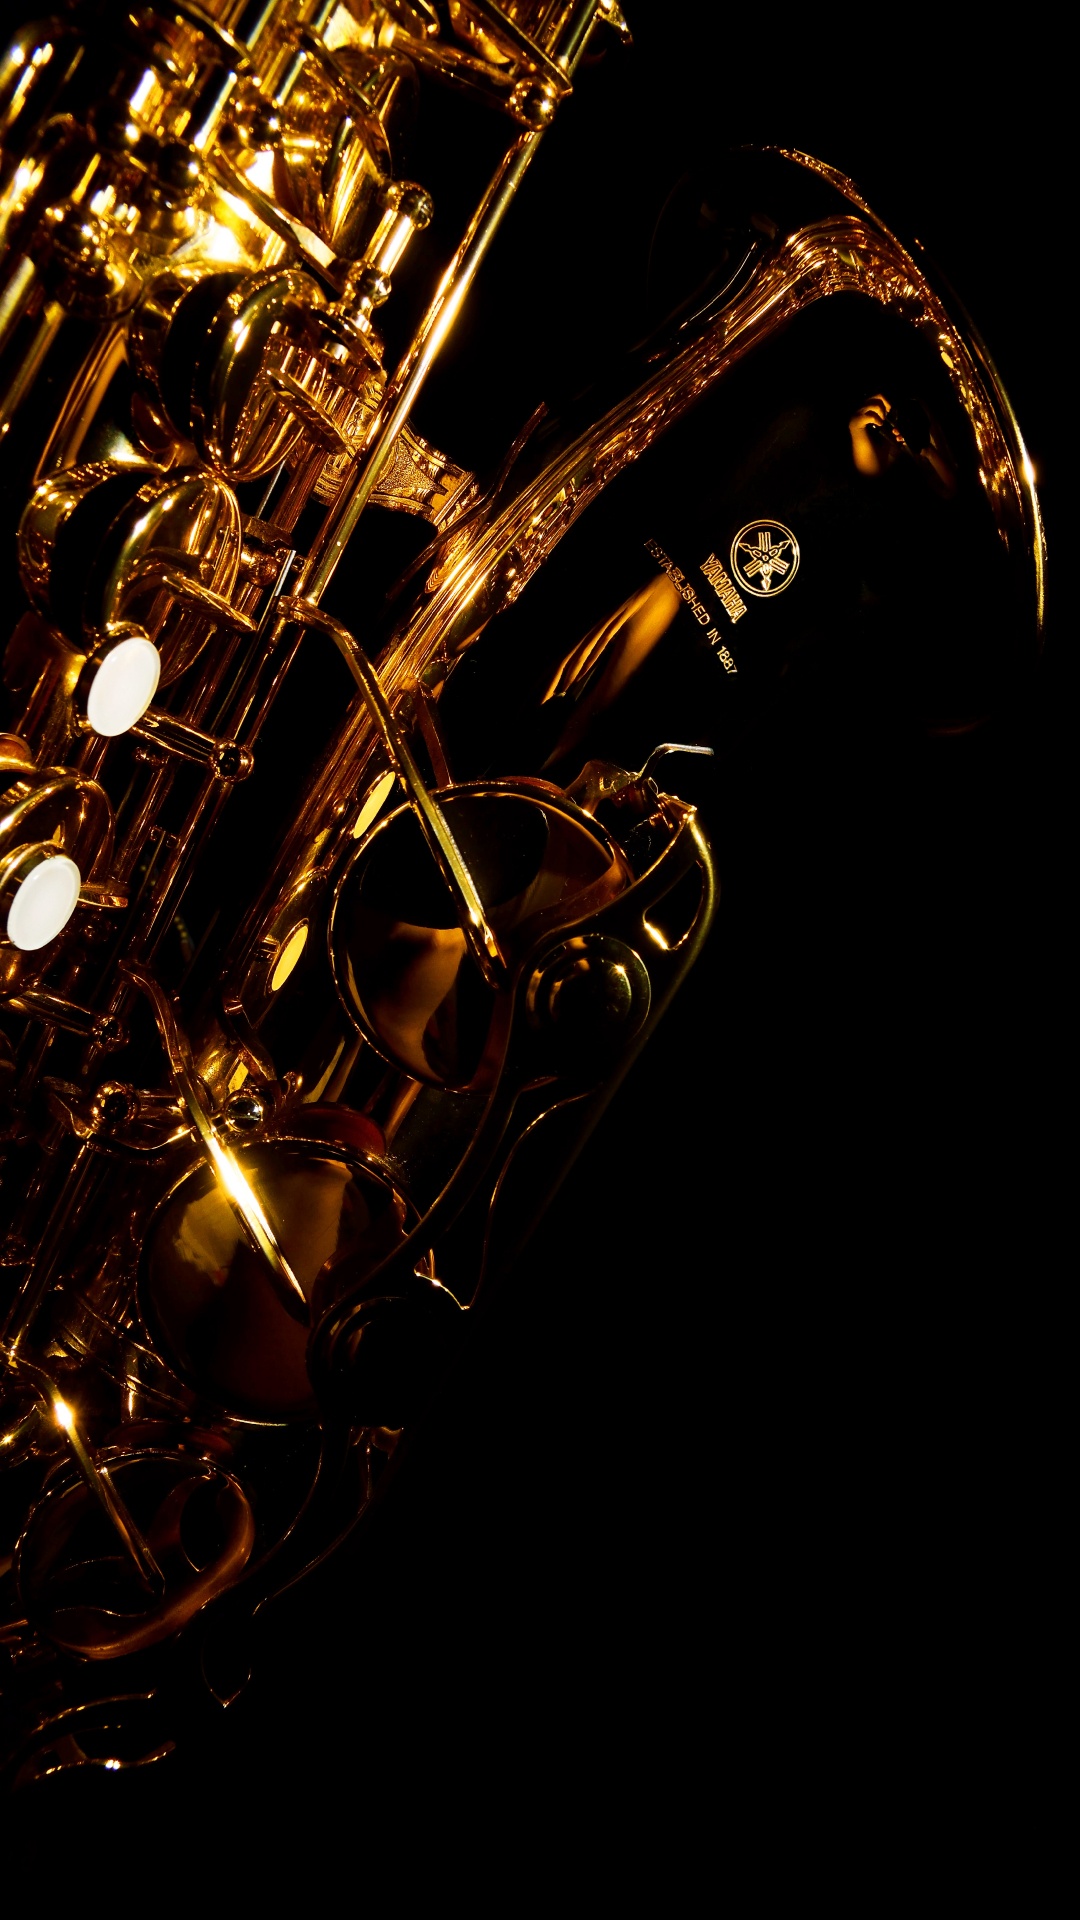 Trompete, Saxophon, Messing-instrument, Wind Instrument, Holzblasinstrument. Wallpaper in 1080x1920 Resolution